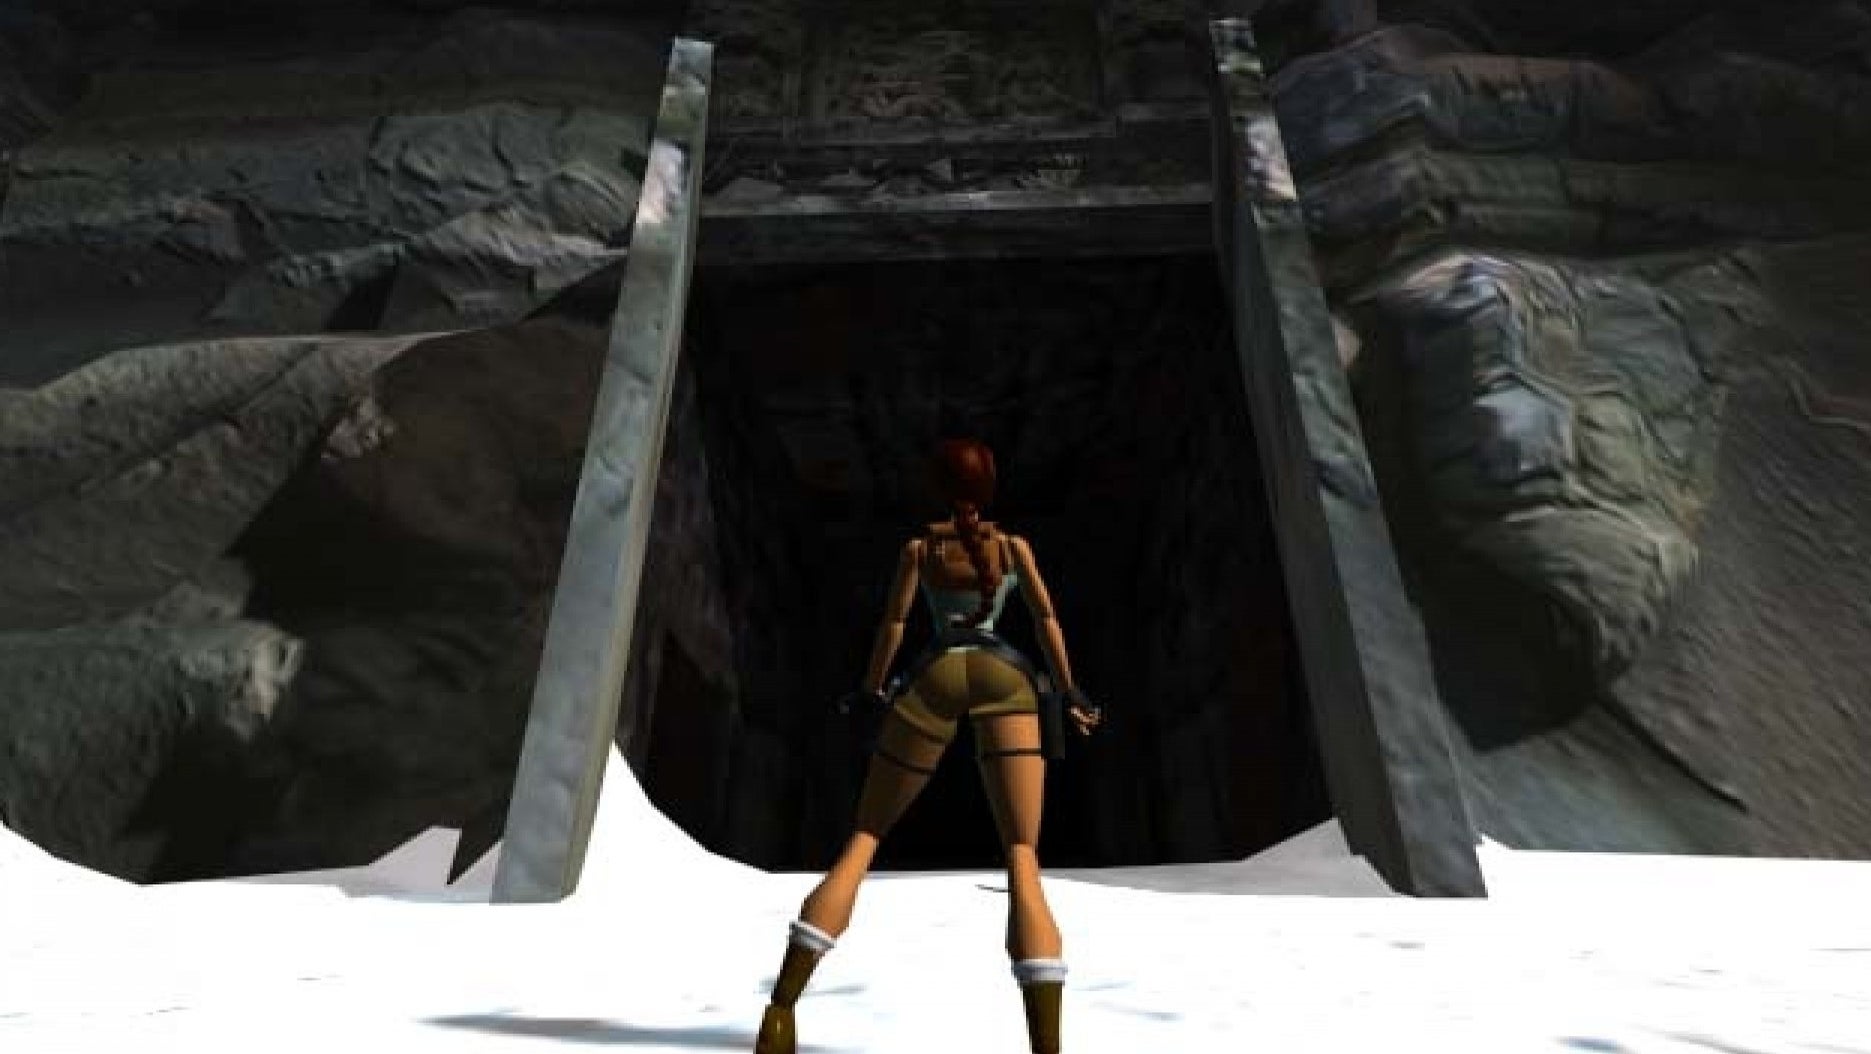 Bilder zu 25 Jahre Lara Croft: Warum Tomb Raider alles verändert hat